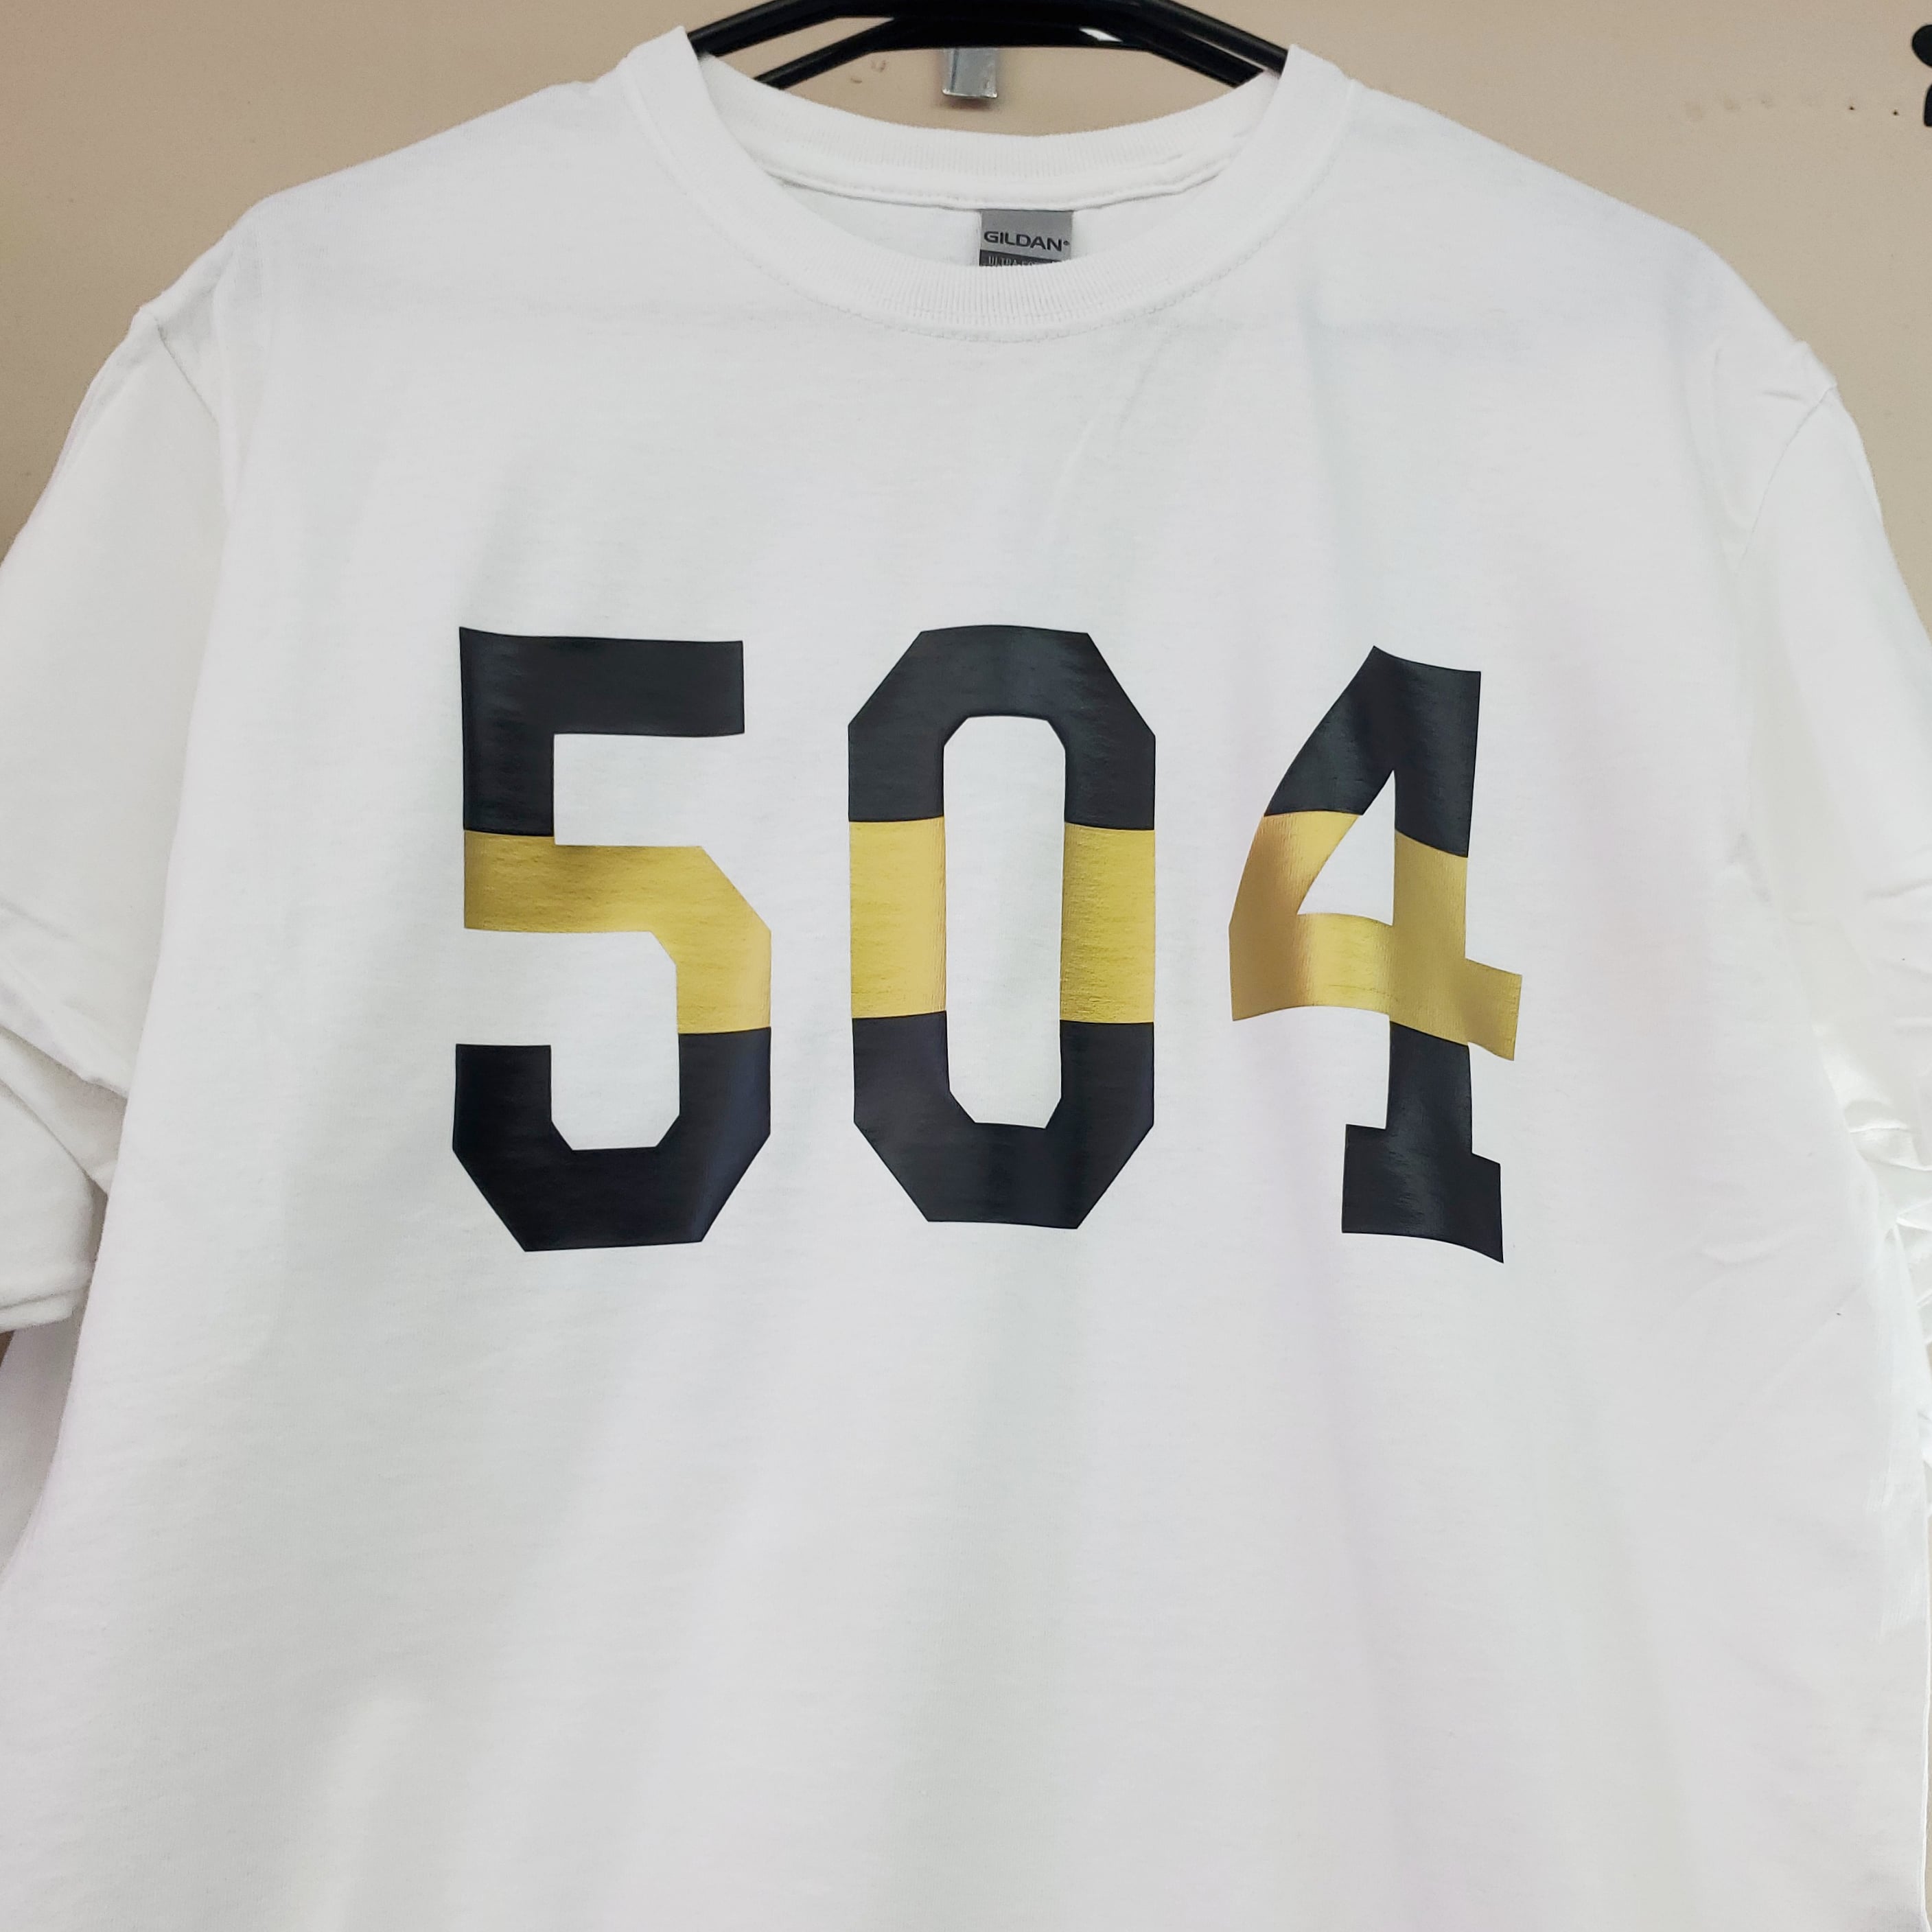 504 tshirt (no glitter)